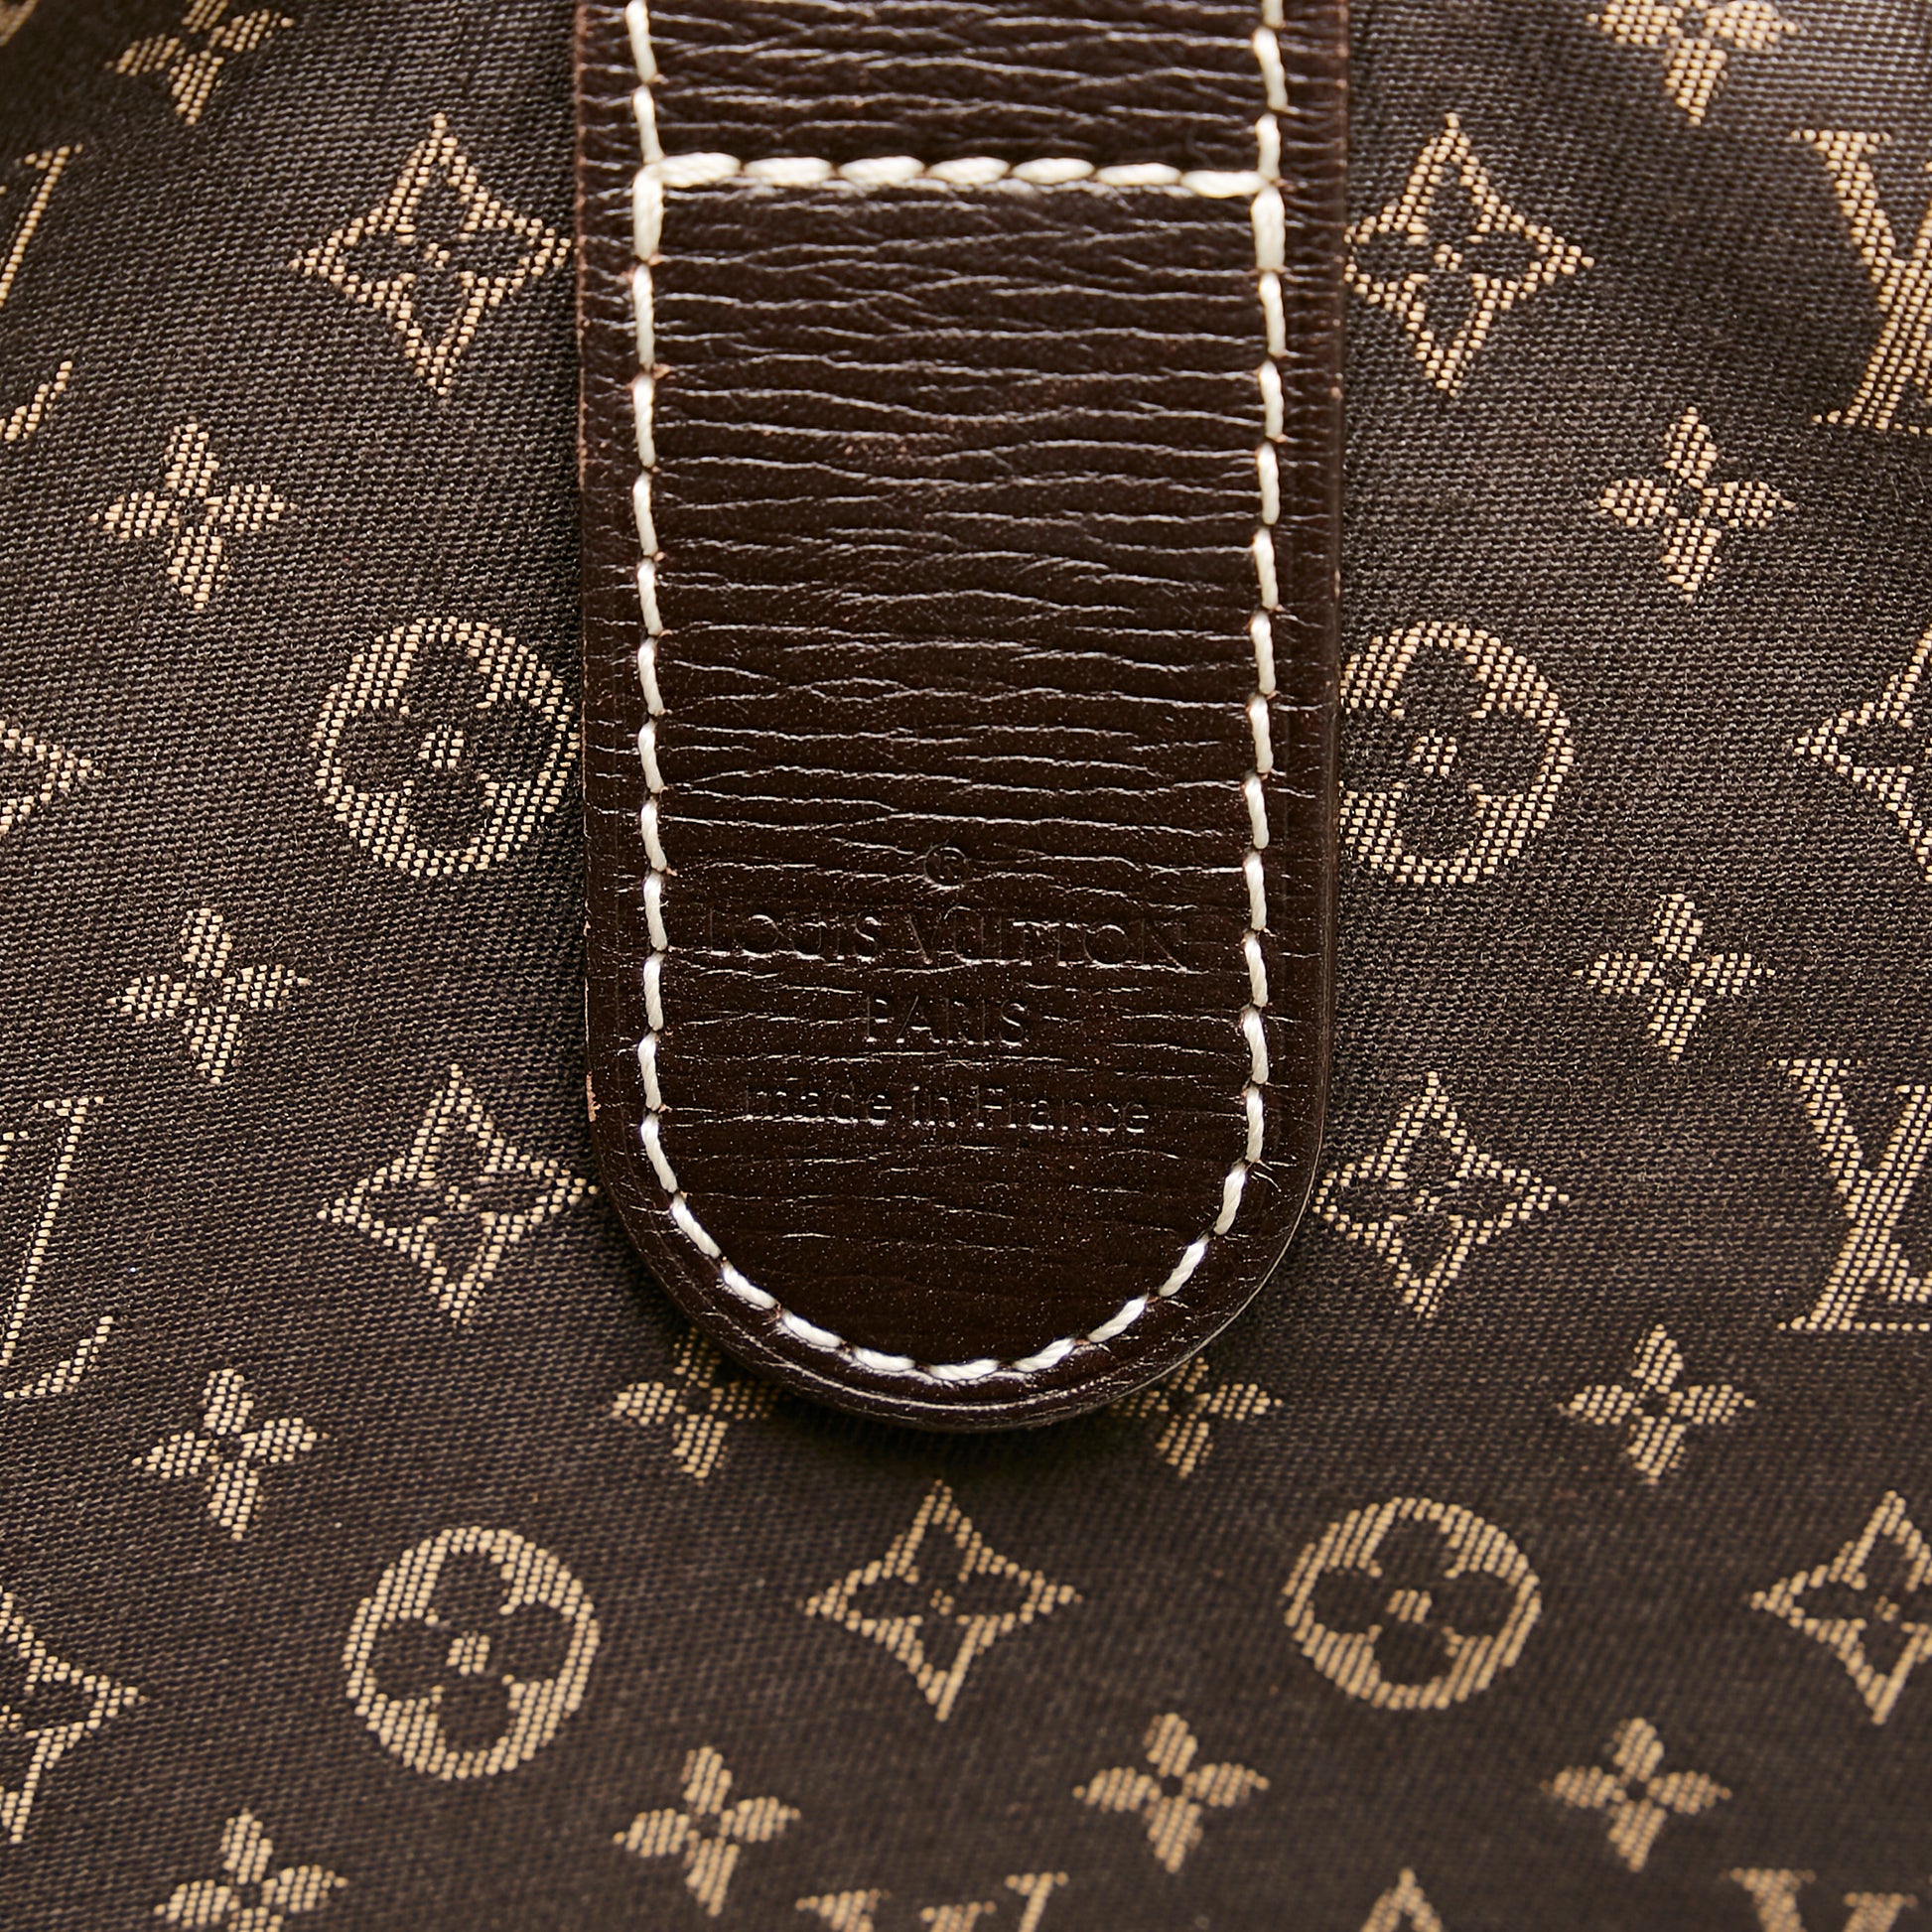 Louis Vuitton Romance Handbag Monogram Idylle - ShopStyle Shoulder Bags